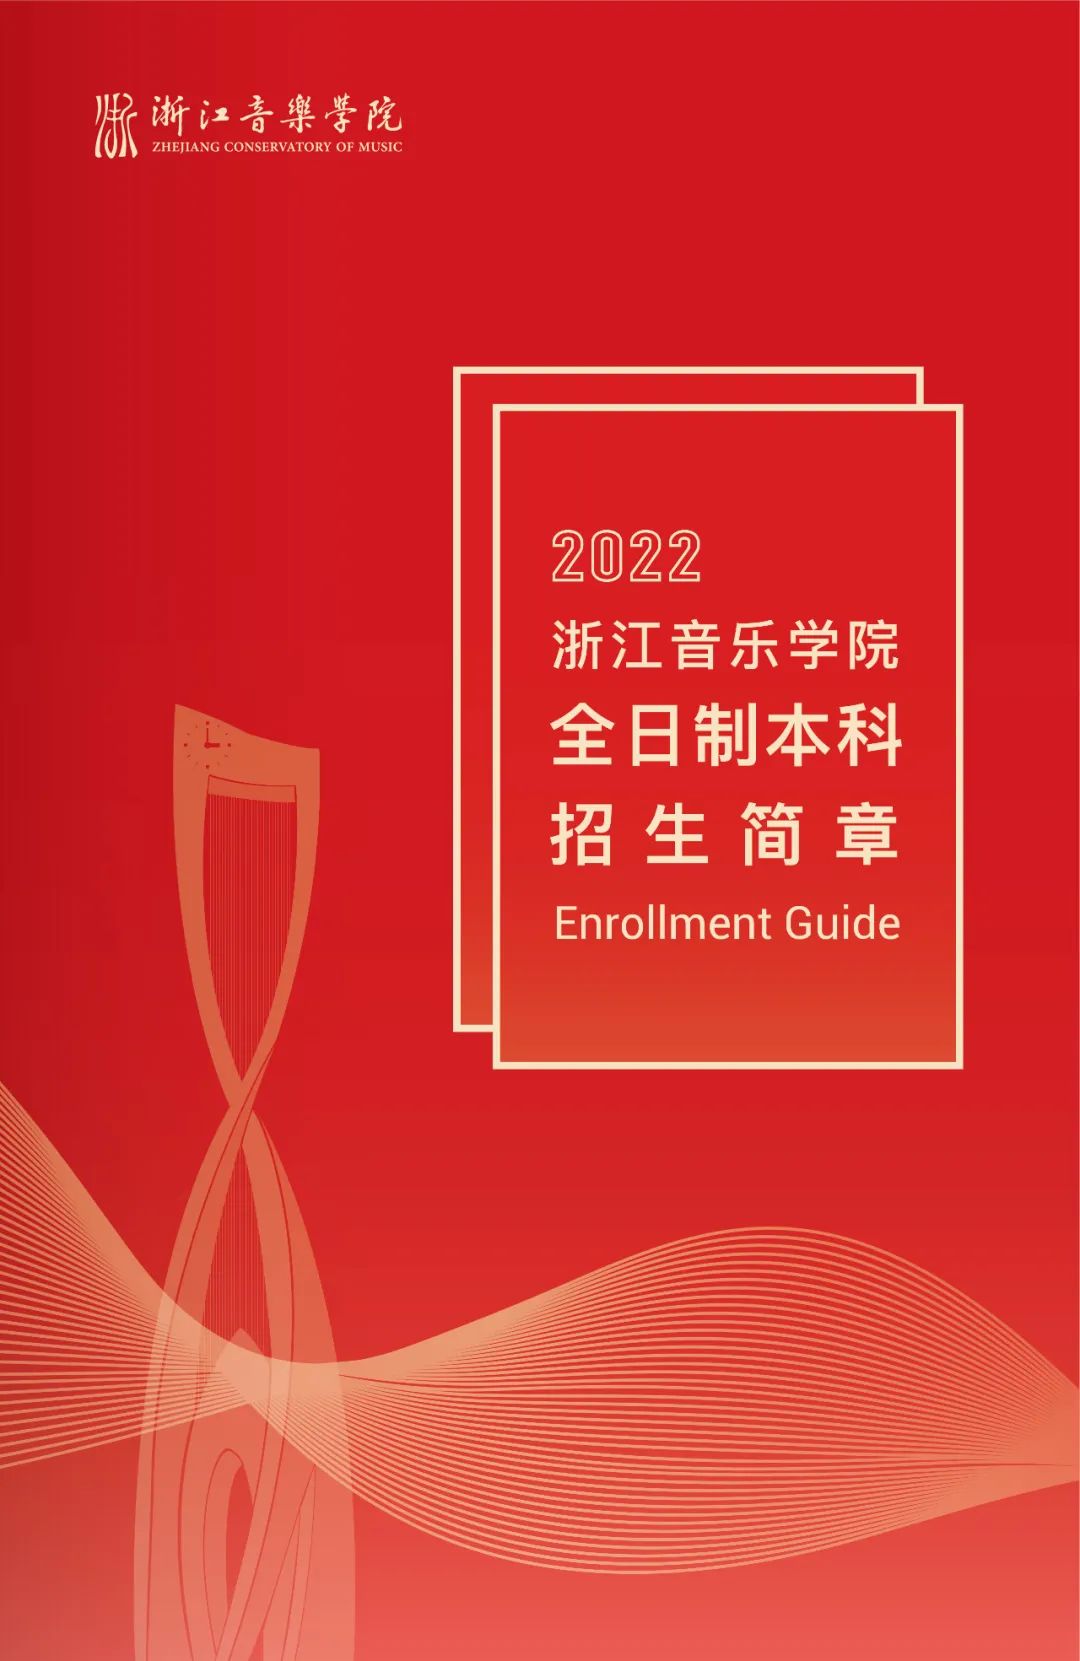 2022年浙江音乐学院全日制本科招生简章、专业、计划及招生省份、考试内容、录取原则等信息